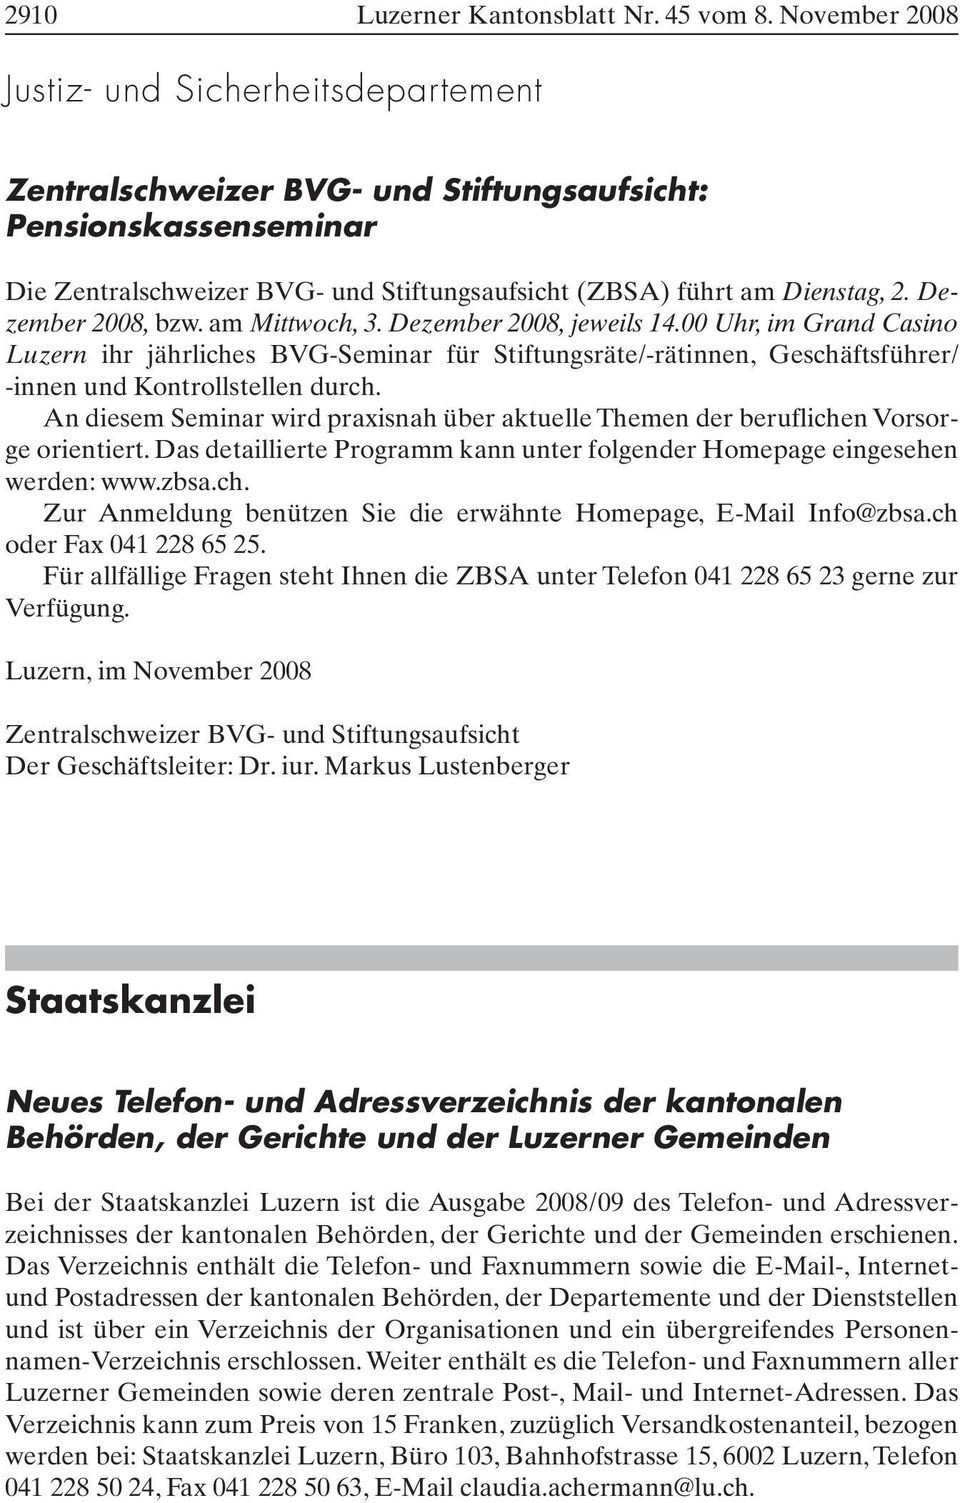 Dezember 2008, bzw. am Mittwoch, 3. Dezember 2008, jeweils 14.00 Uhr, im Grand Casino Luzern ihr jährliches BVG-Seminar für Stiftungsräte/-rätinnen, Geschäftsführer/ -innen und Kontrollstellen durch.